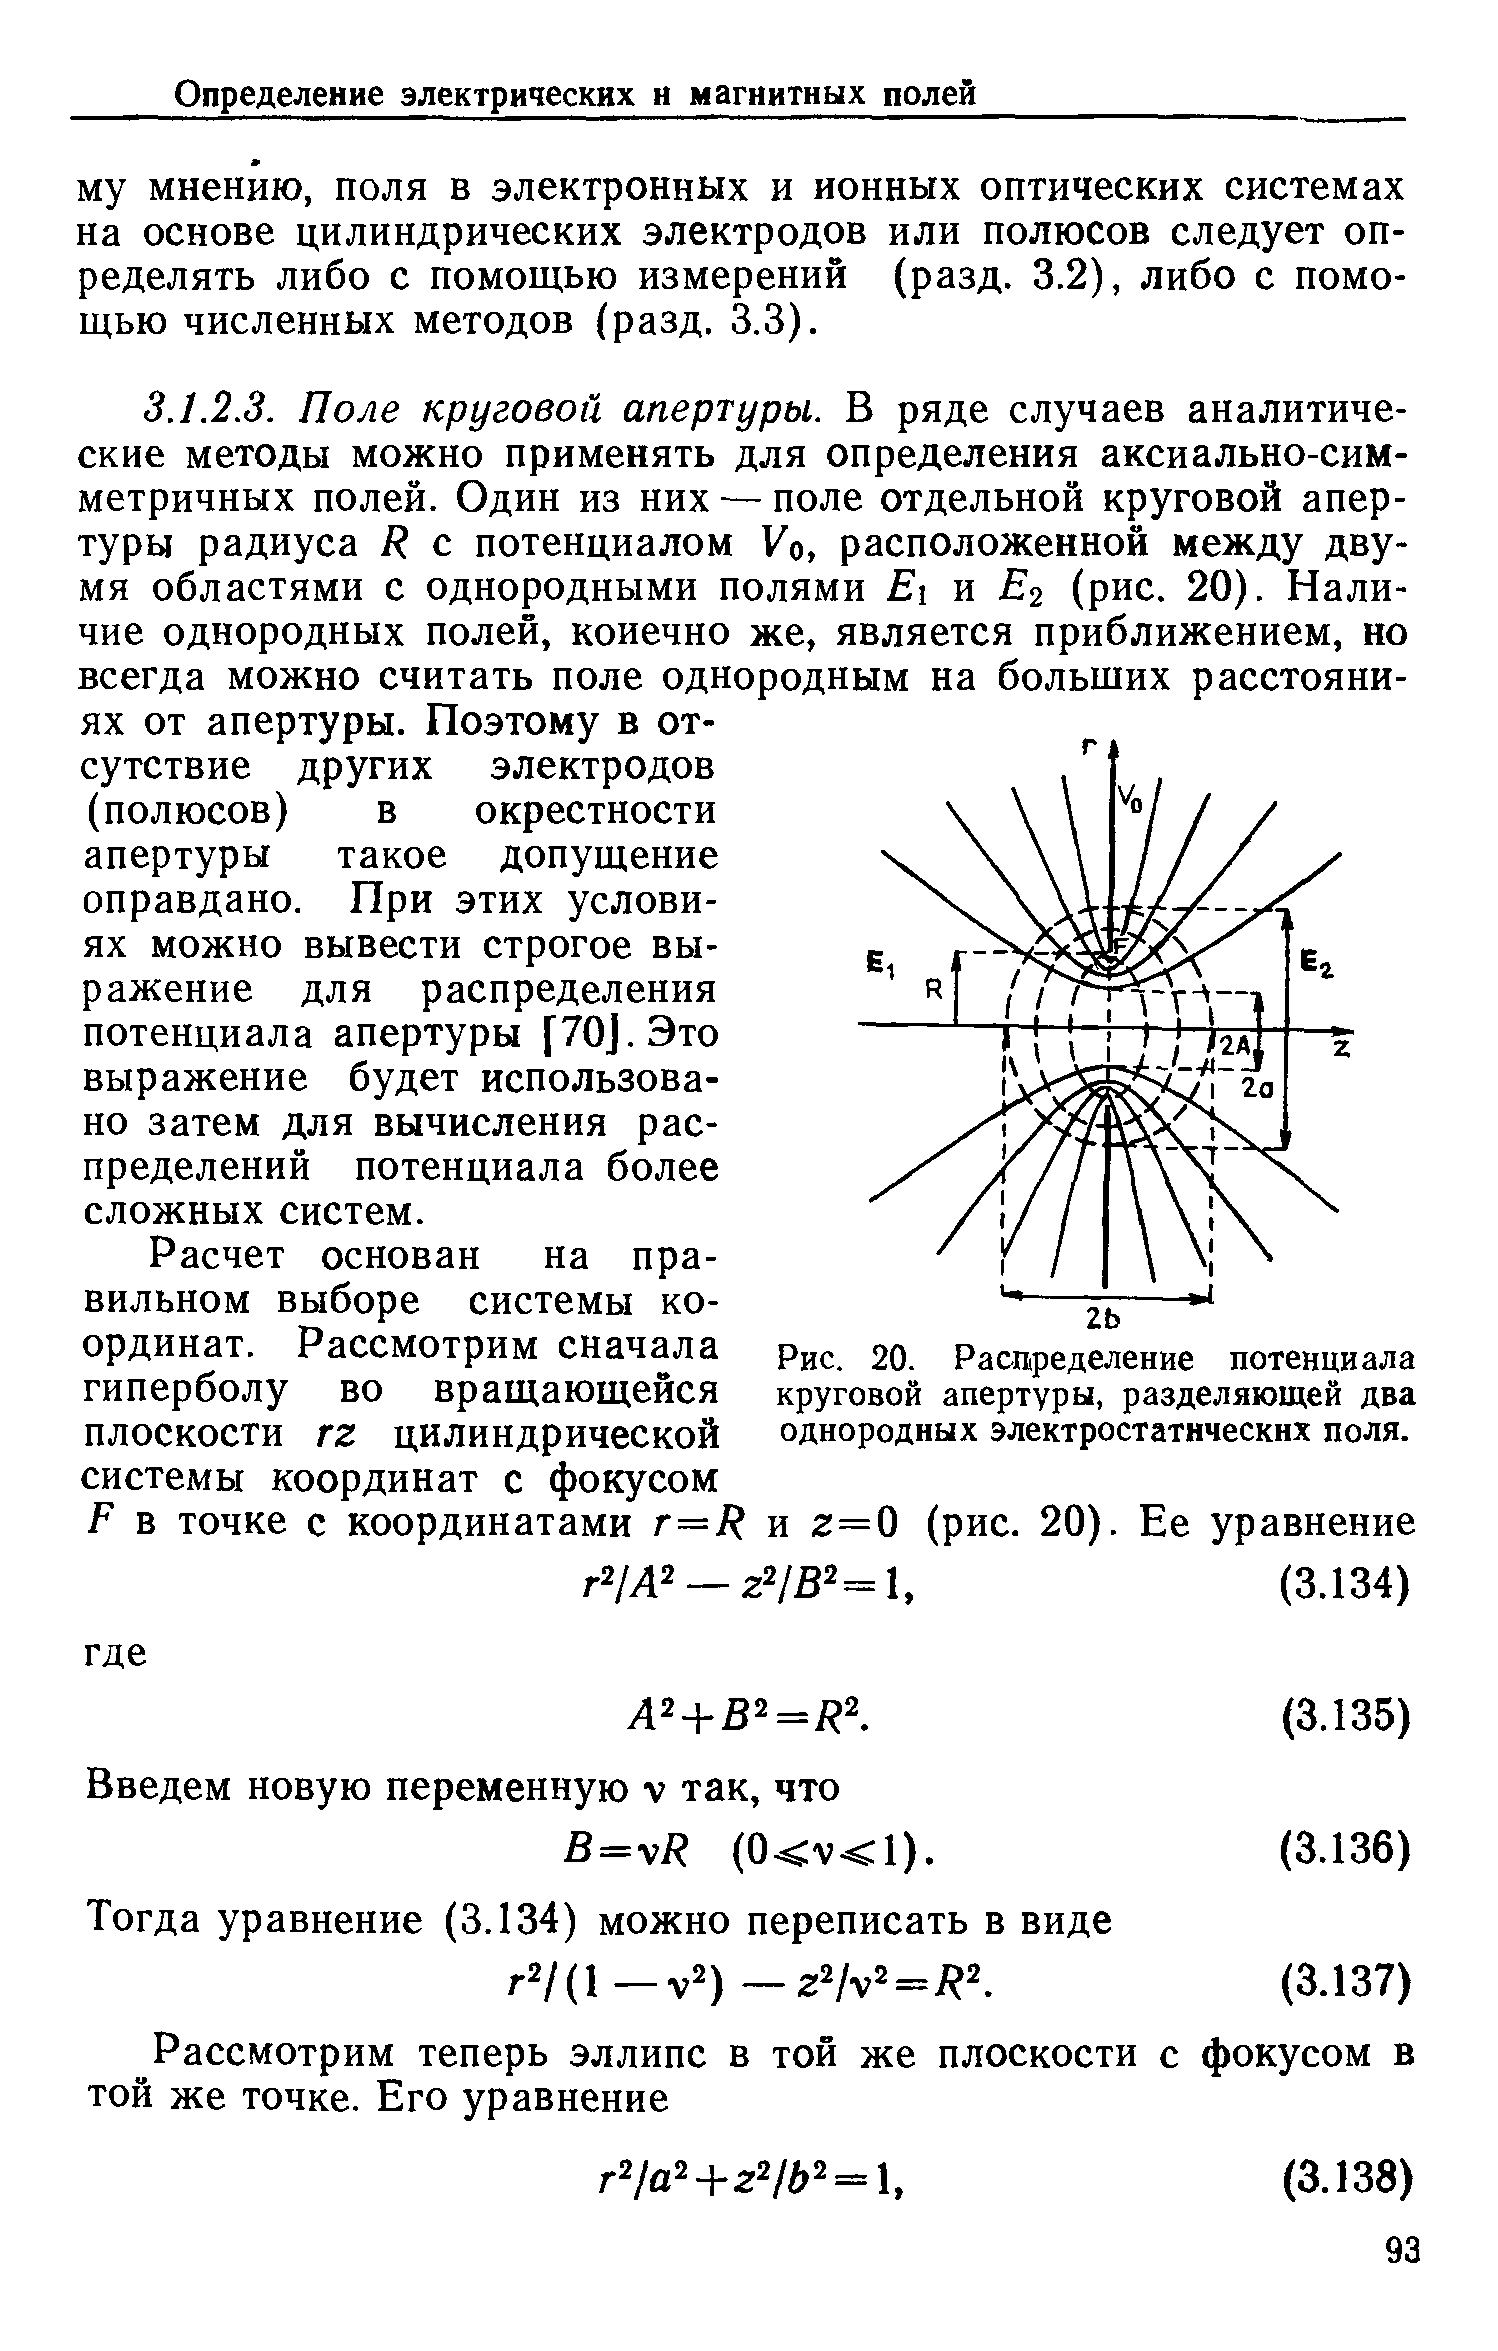 Рис. 20. Распределение потенциала круговой апертуры, разделяющей два однородных электростатических поля.
